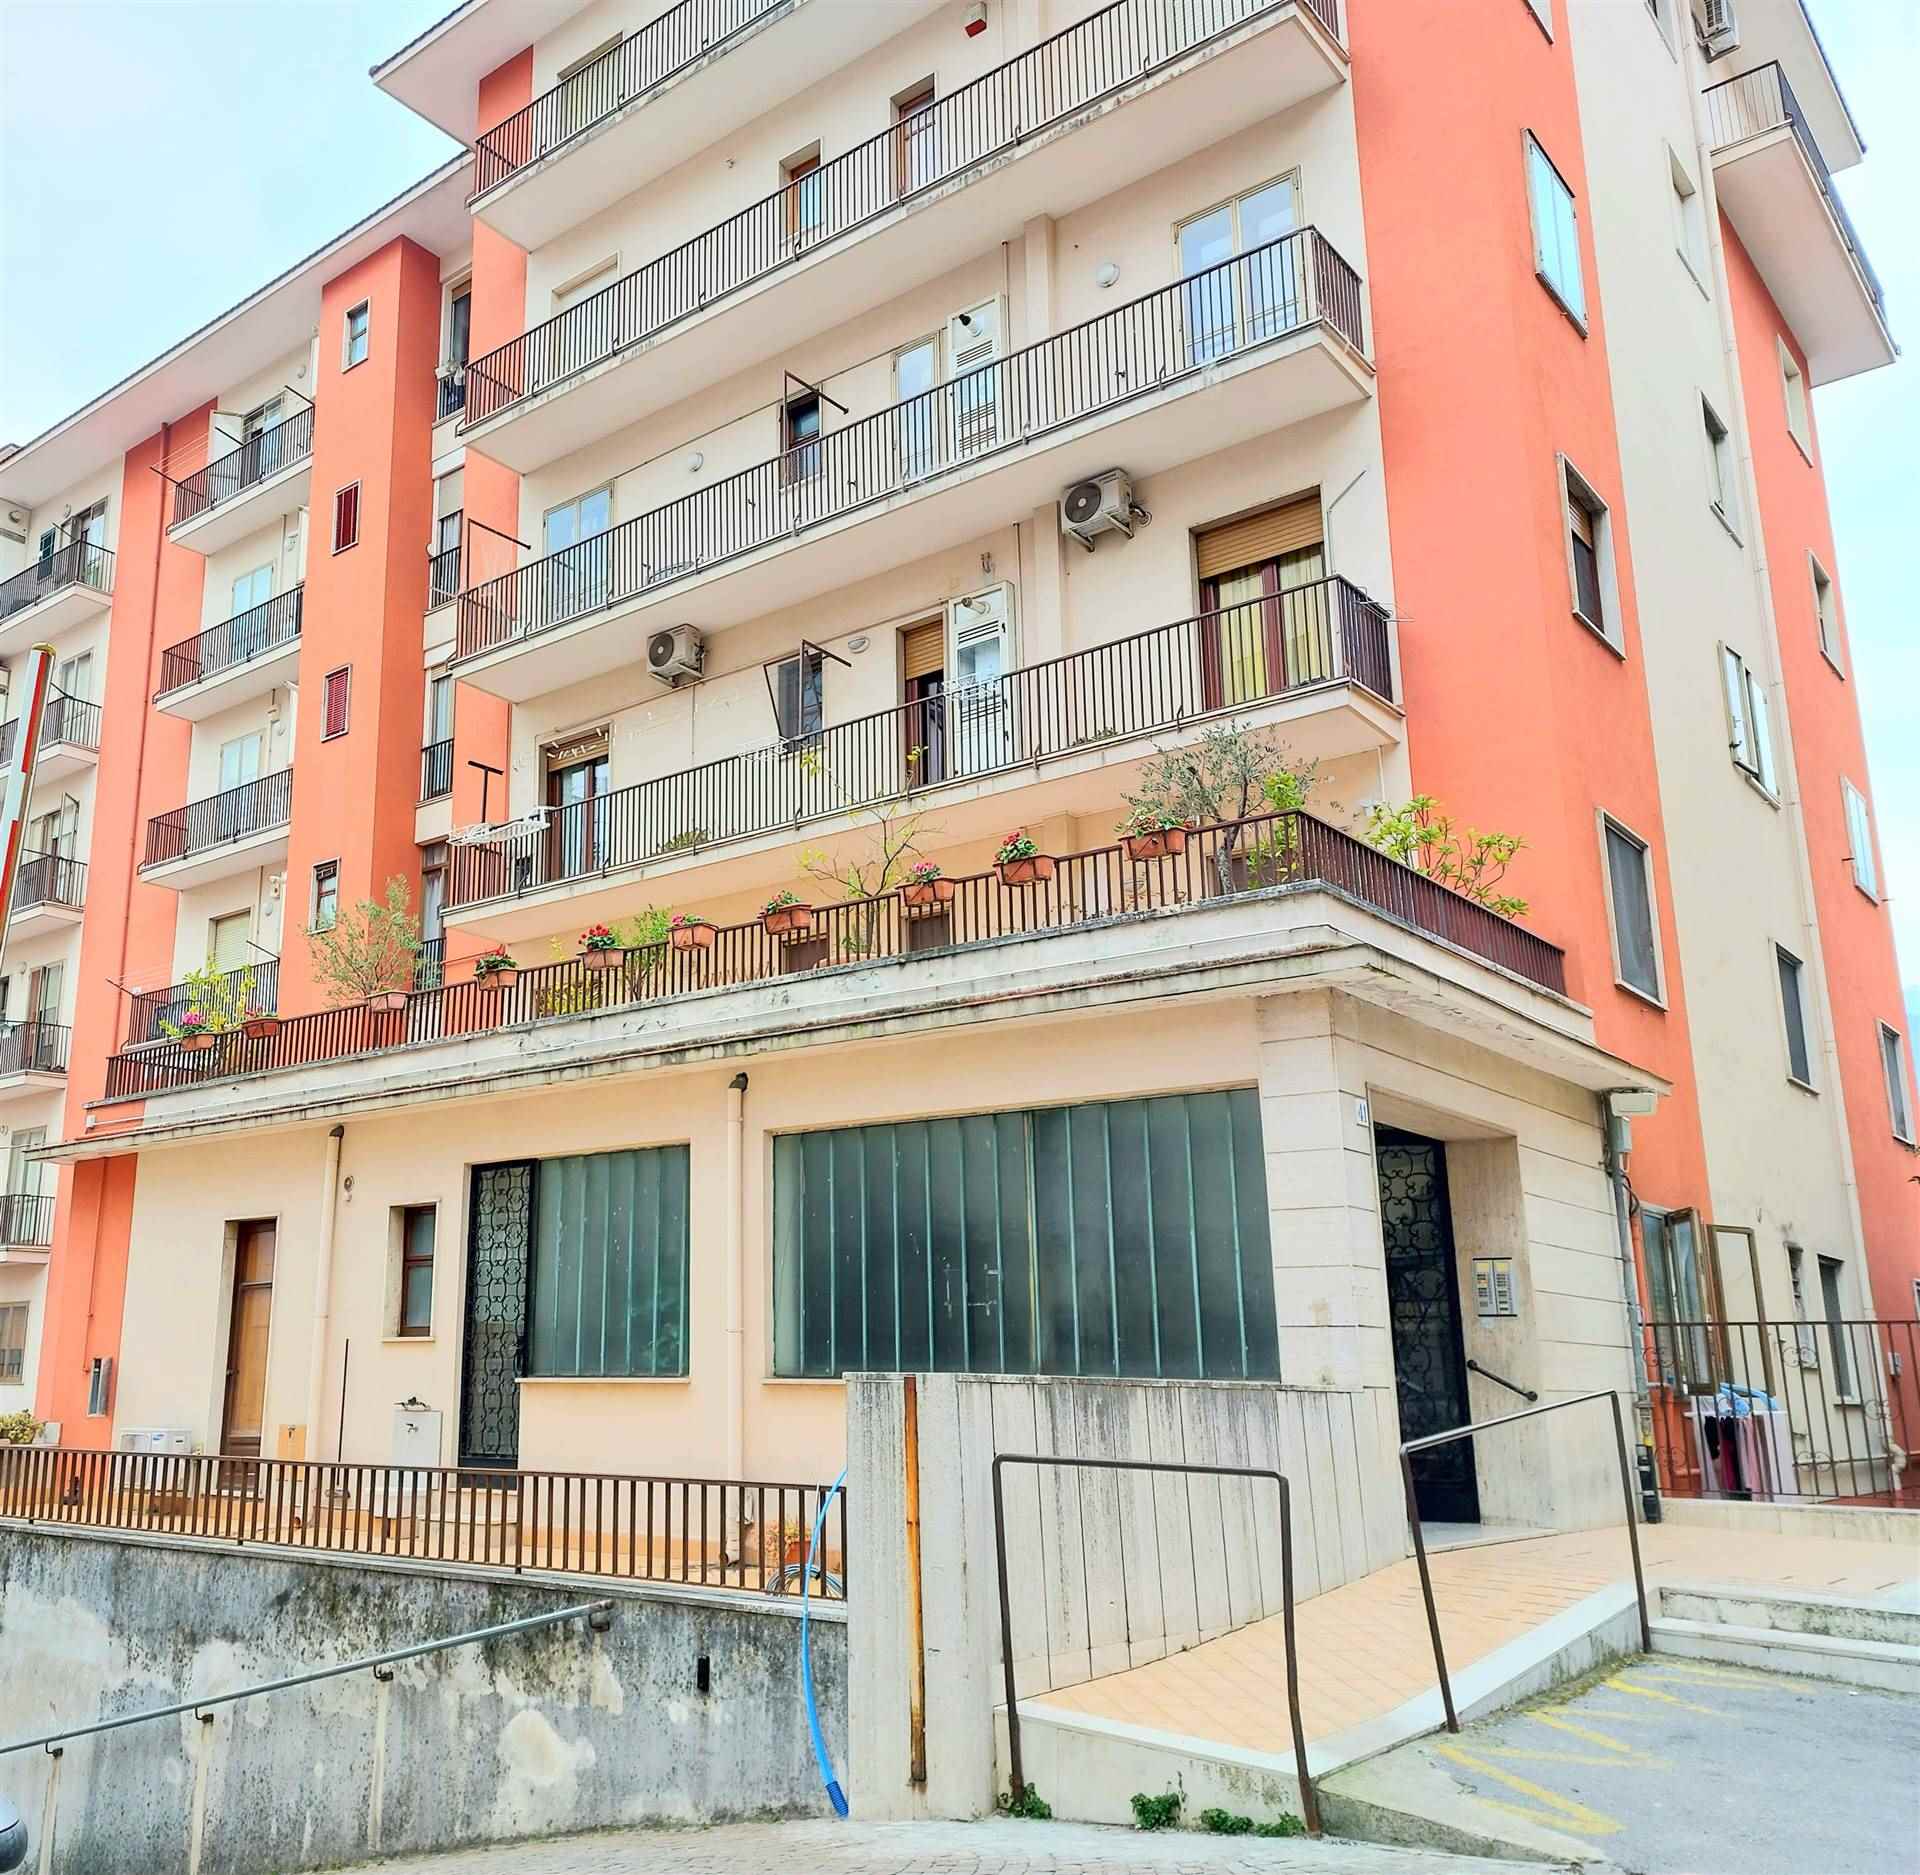 Appartamento in vendita a Cava de' Tirreni, 4 locali, zona Località: CENTRO ZONA VIA SALA, prezzo € 265.000 | PortaleAgenzieImmobiliari.it